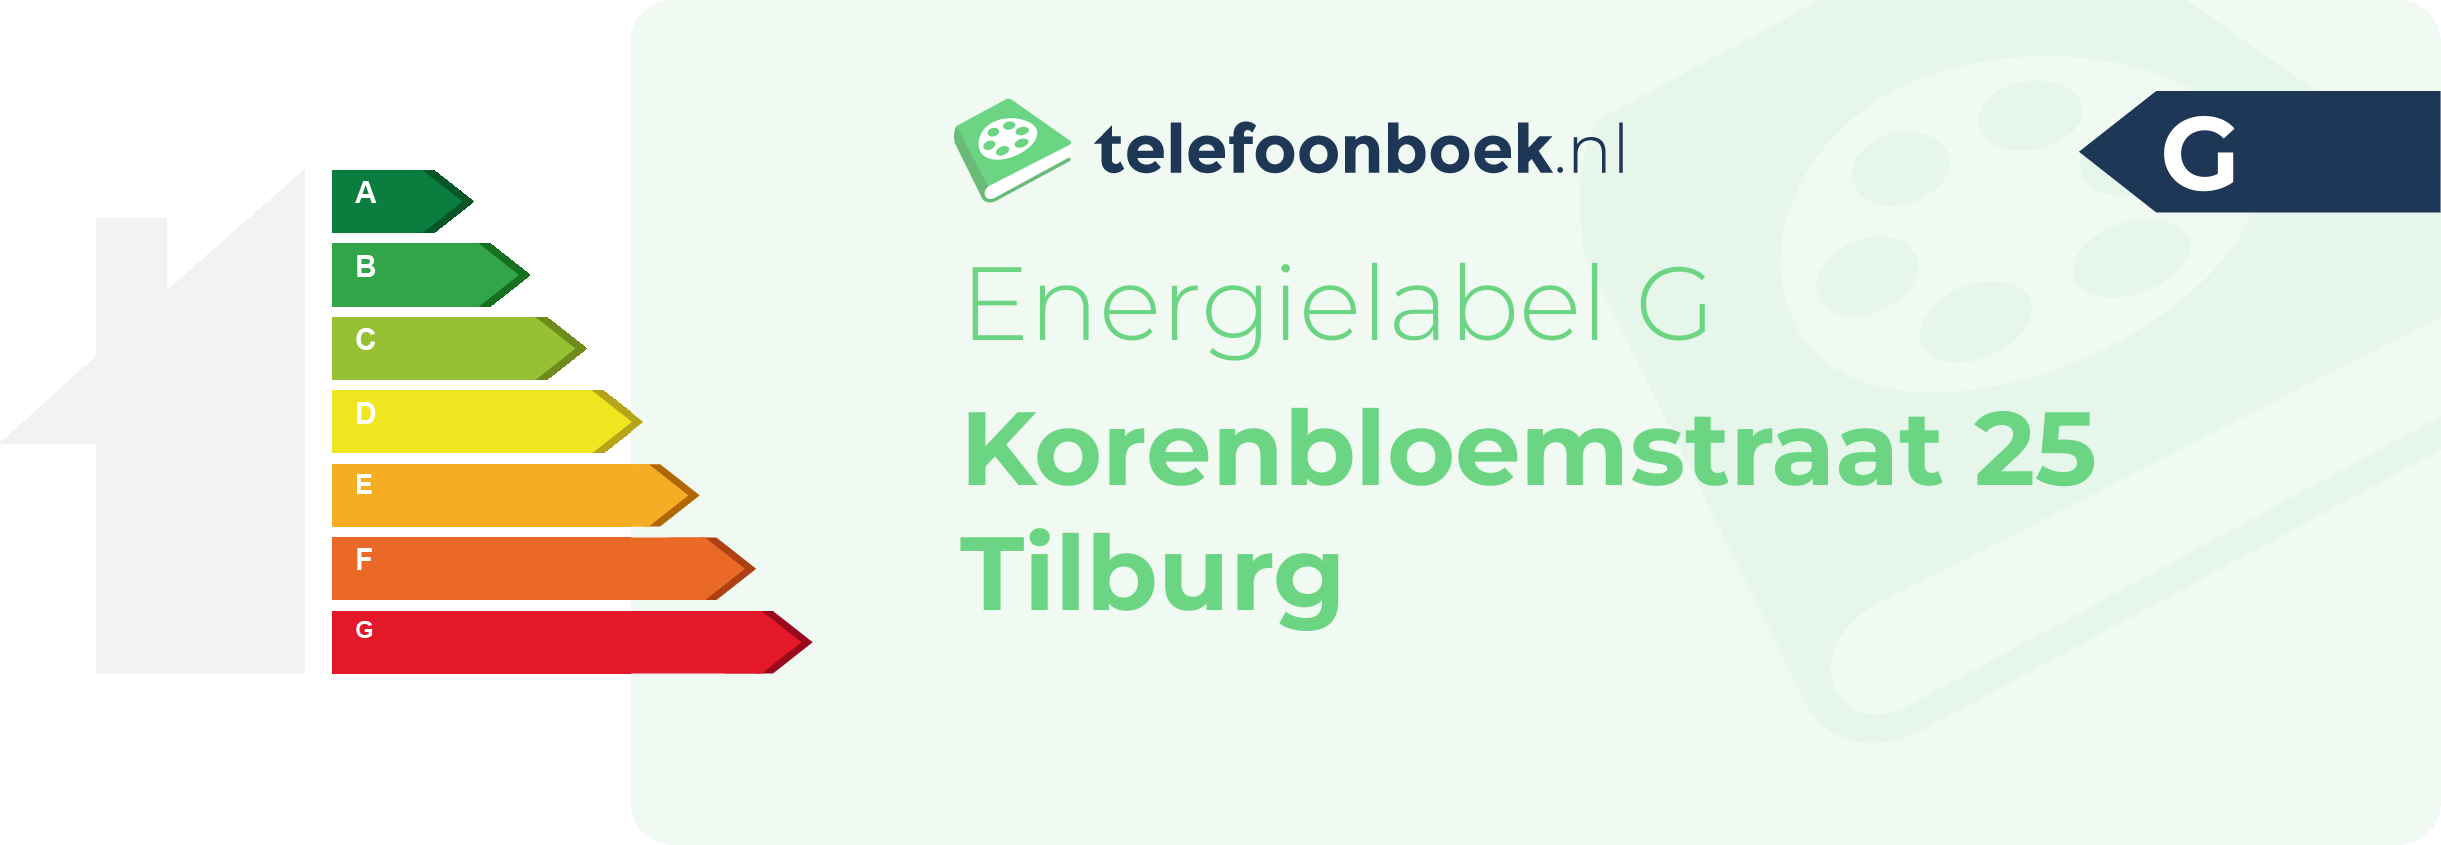 Energielabel Korenbloemstraat 25 Tilburg